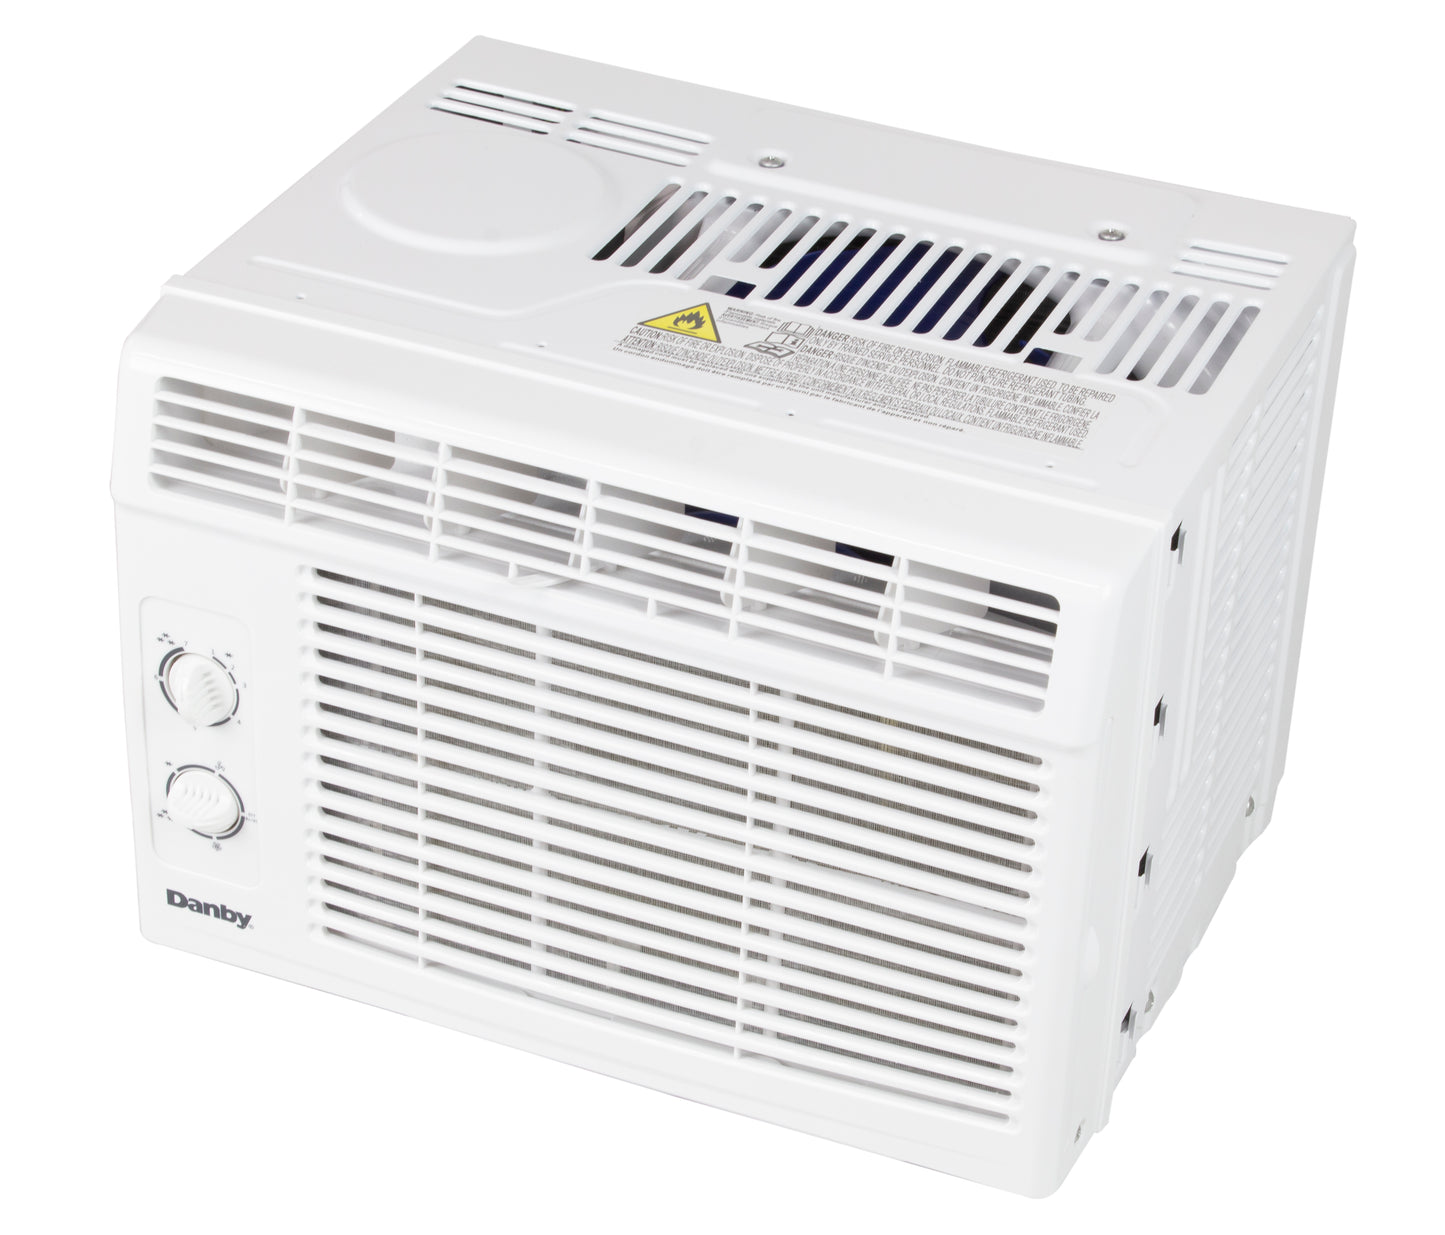 Danby 5,000 BTU Window Air Conditioner - White - Refurbished*